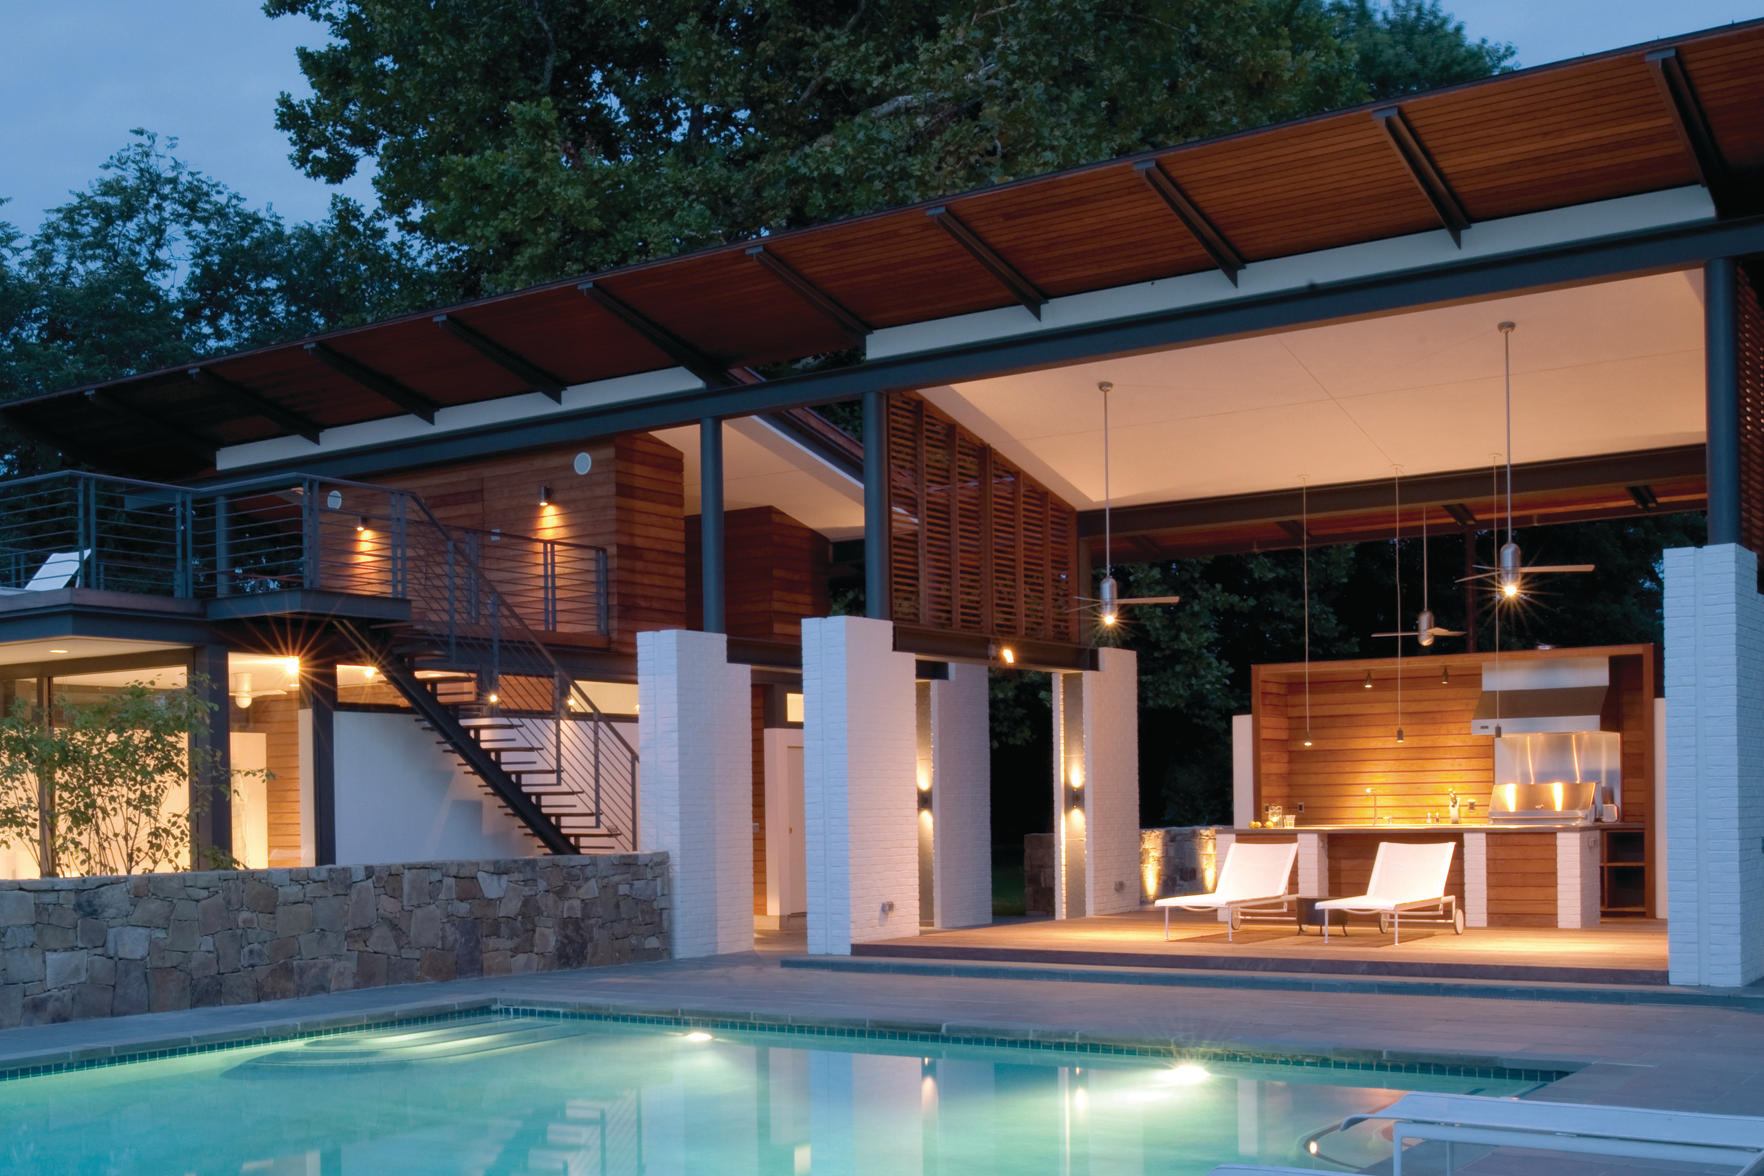 Modern Outdoor Kitchen Design - Residential Architecture Design Inspriation